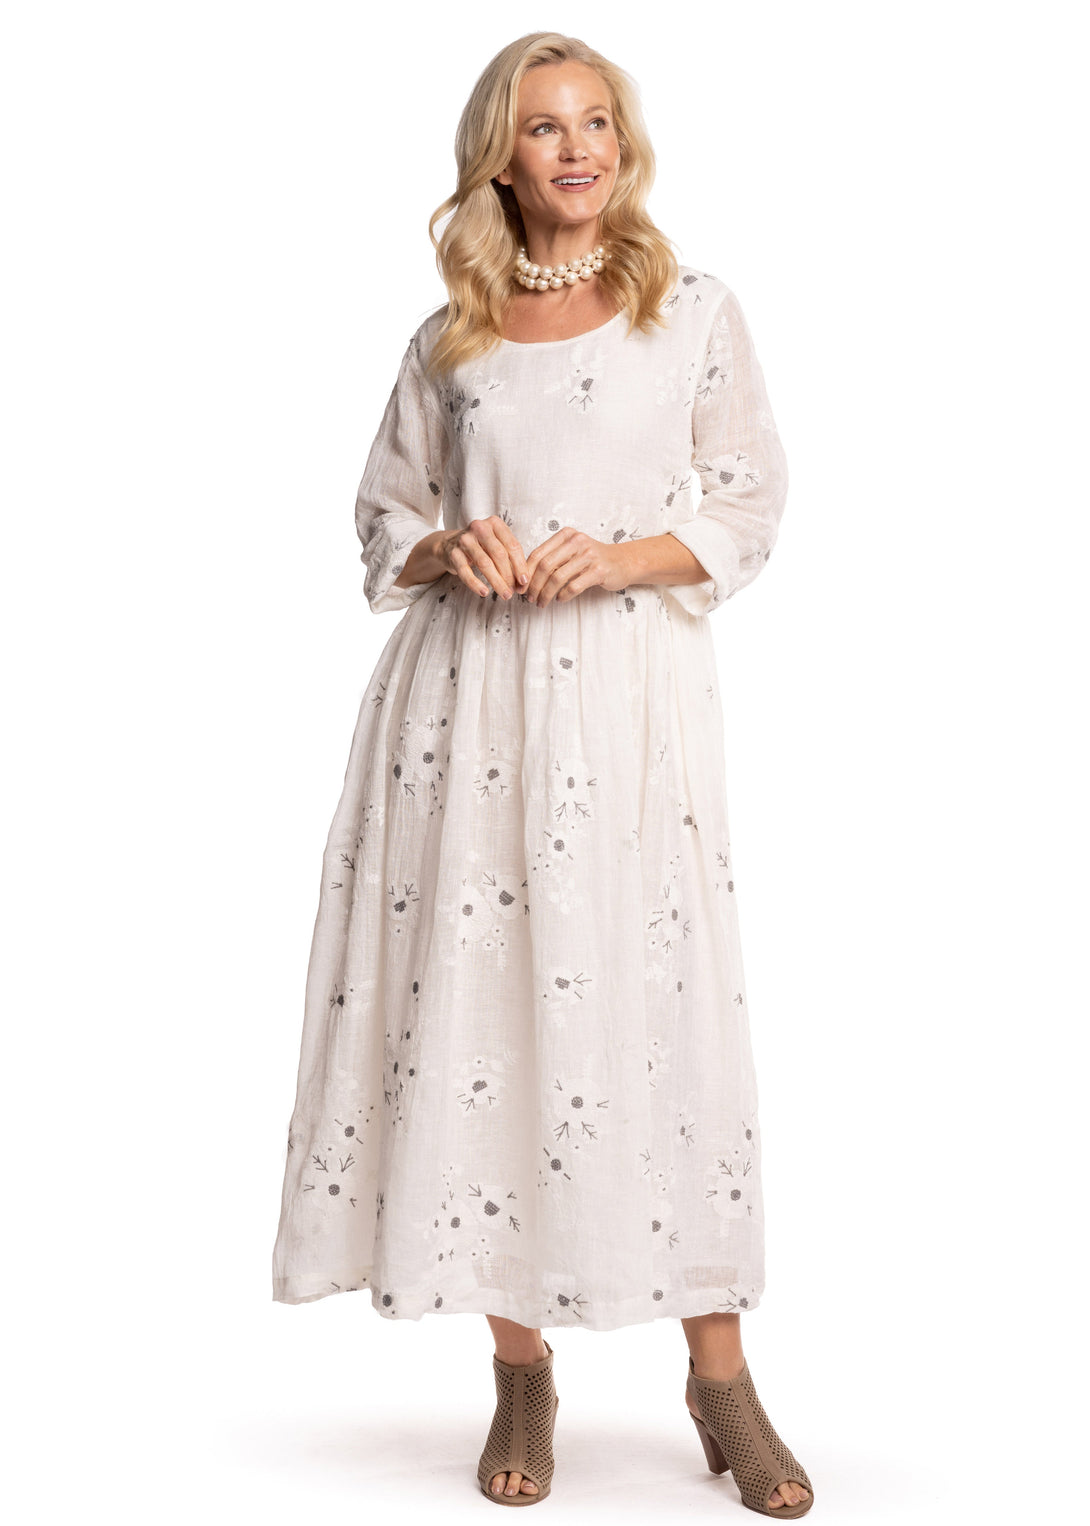 Lottie Dress in Cream